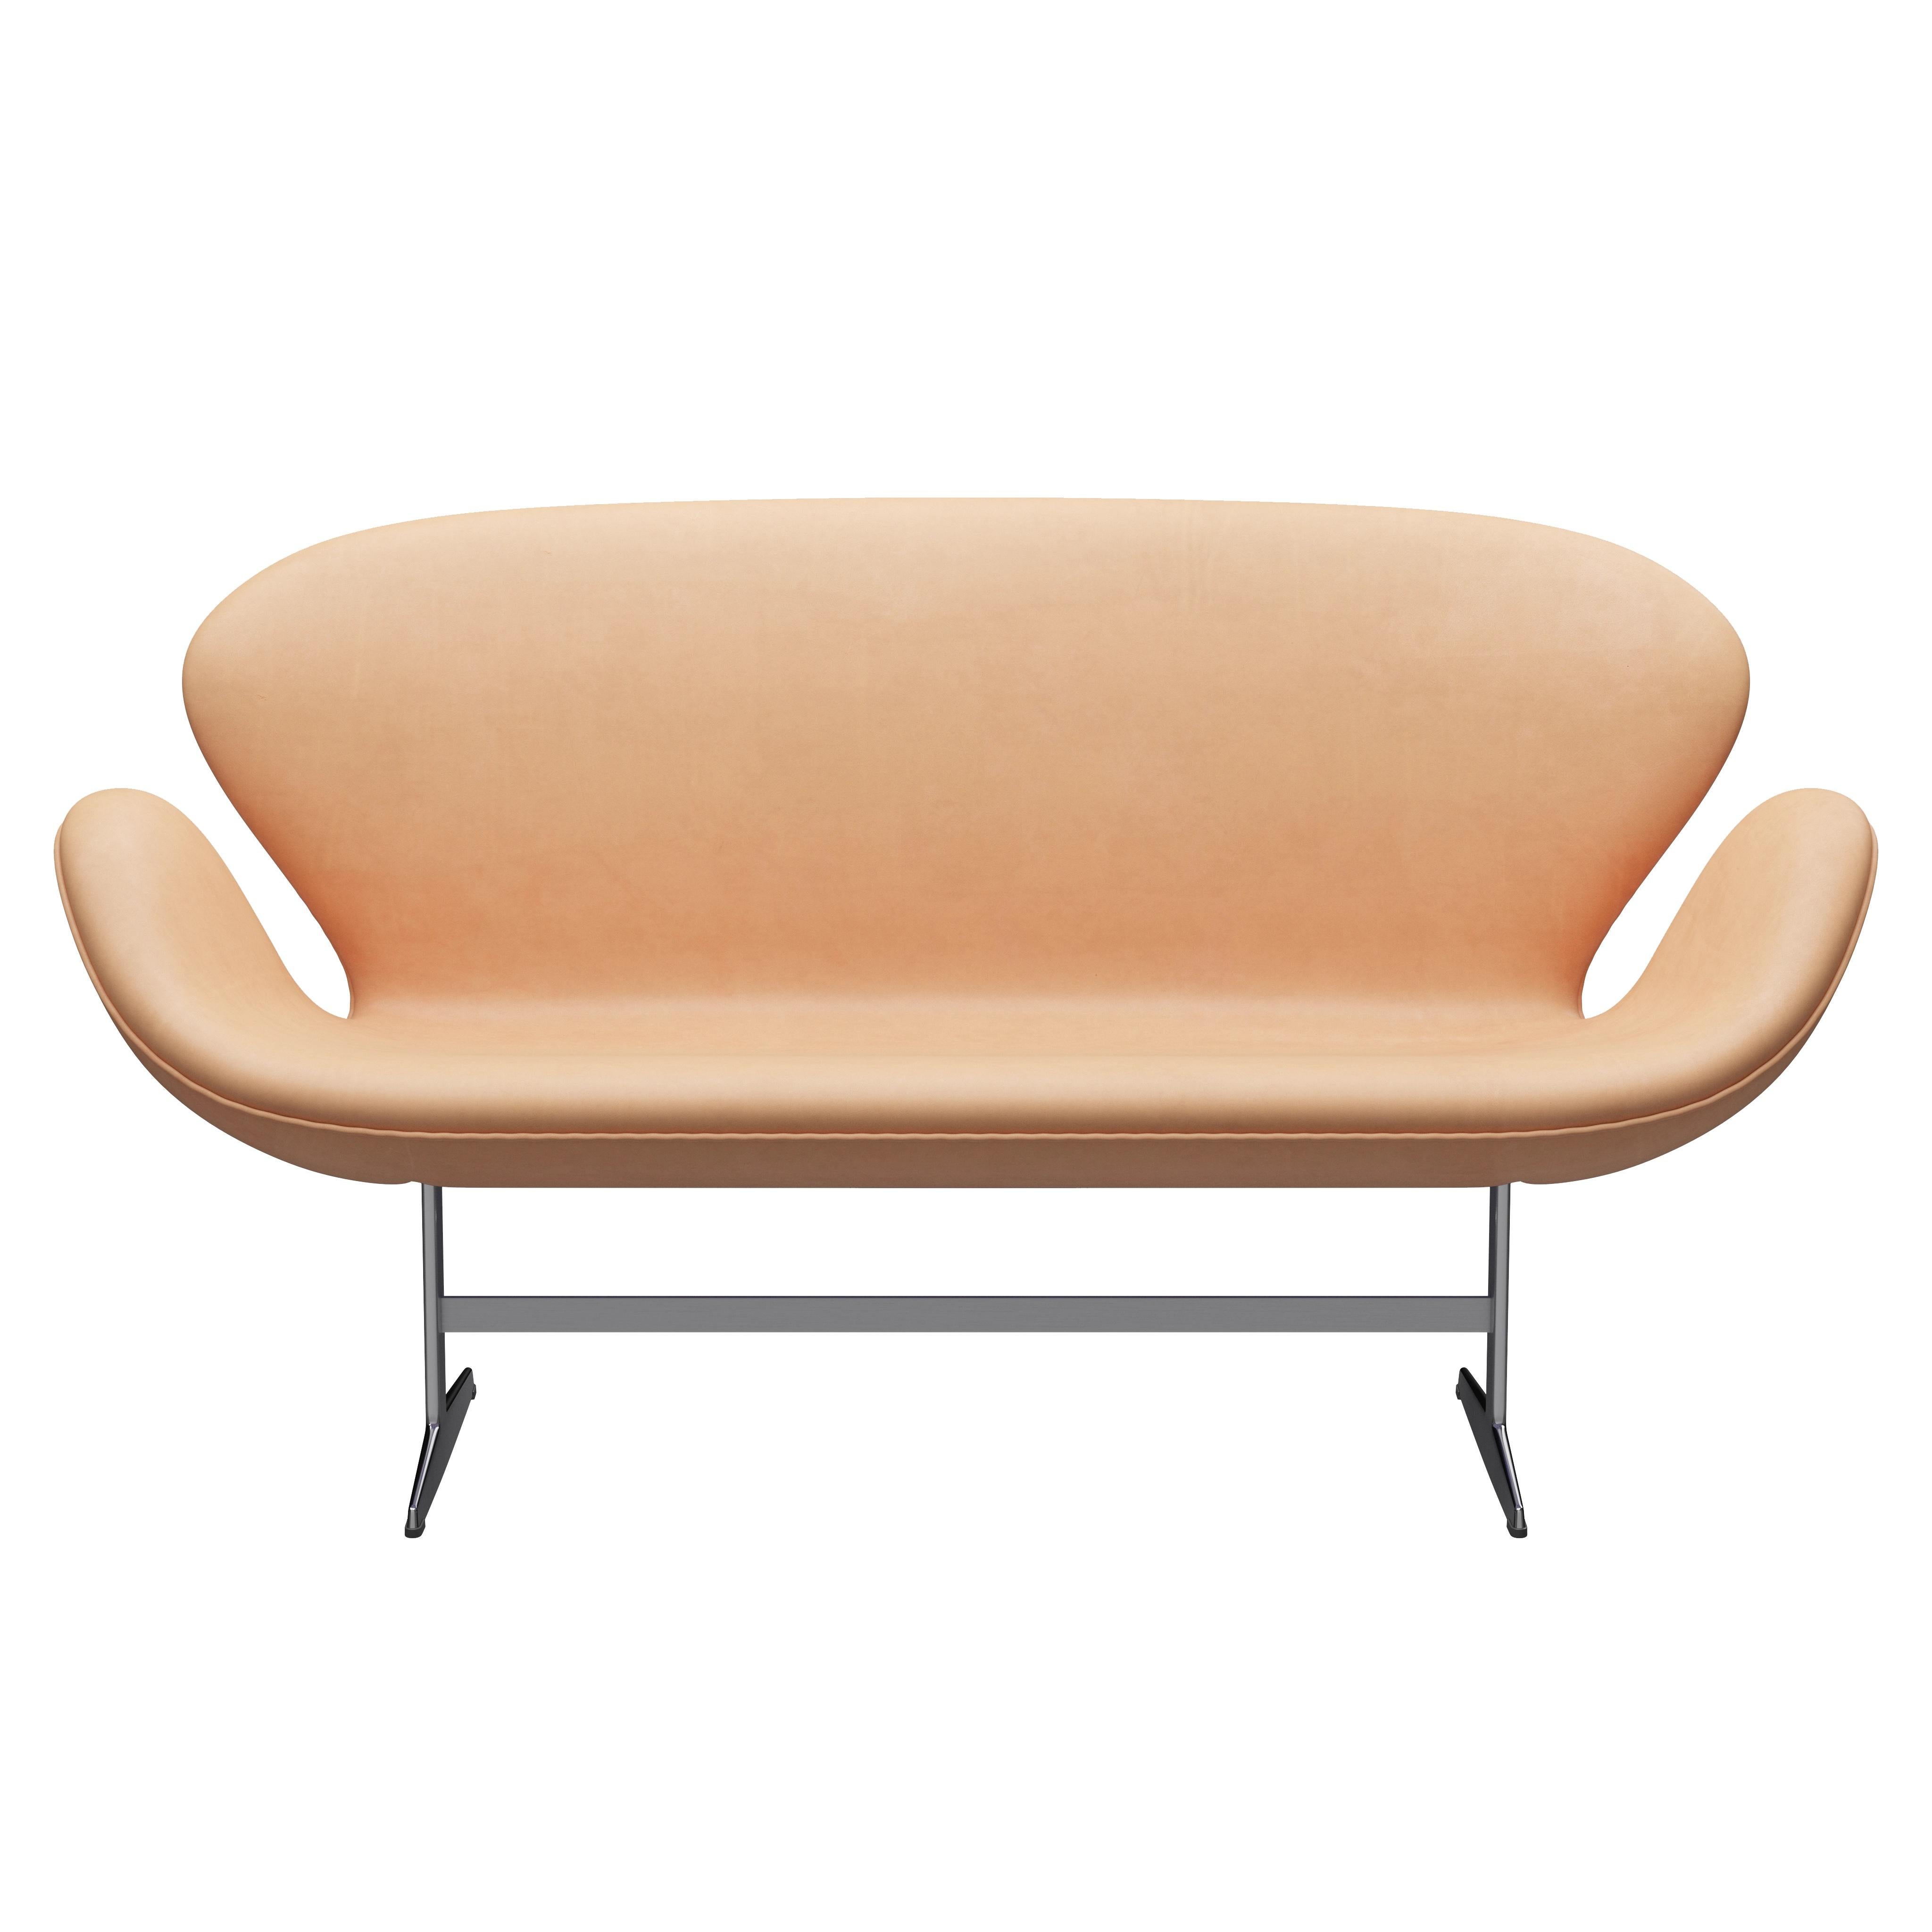 Arne Jacobsen 'Swan' Sofa for Fritz Hansen in Leather Upholstery (Cat. 5) For Sale 7